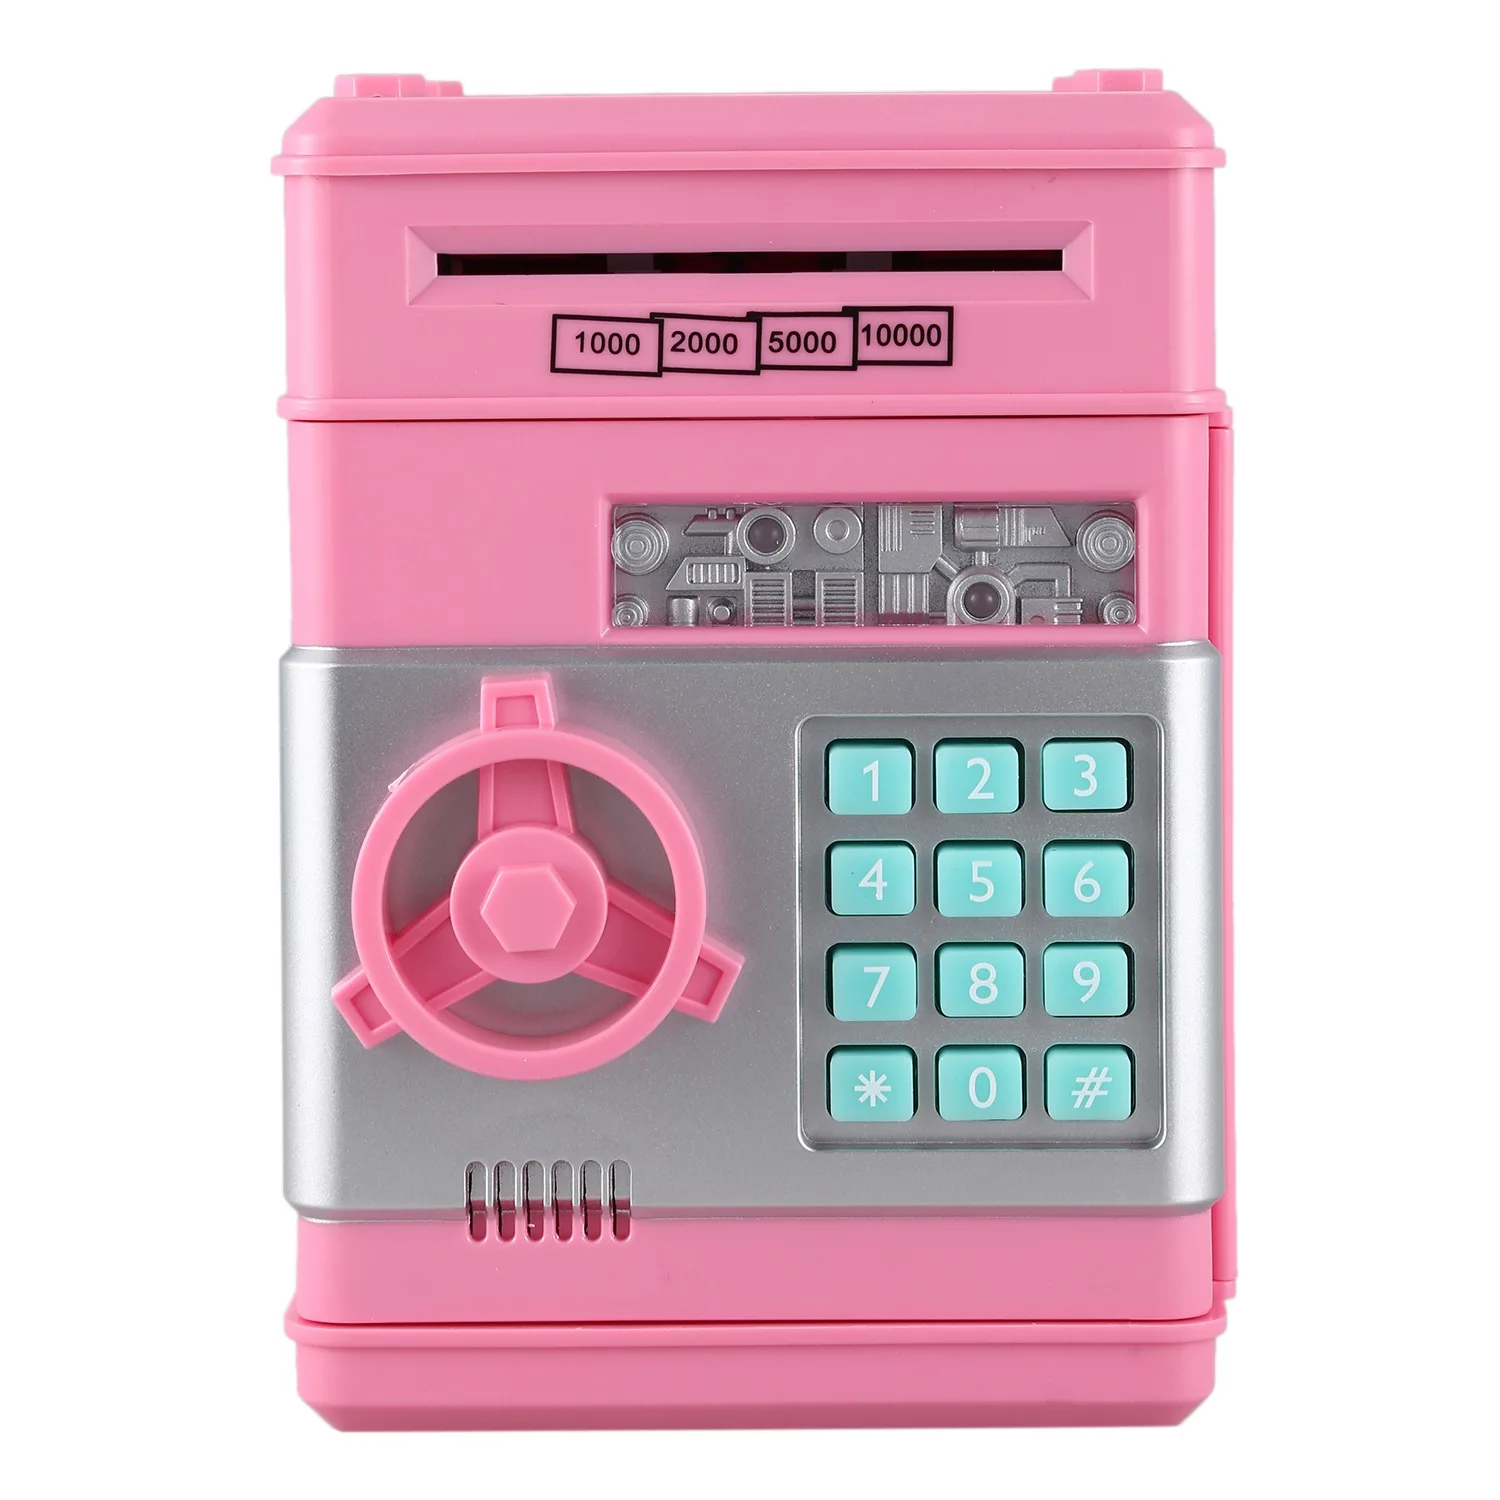 Электронный пароль ATM коробка для хранения Контейнер органайзер для наличных монет сохранение горшок автоматический сейф копилка депозит подарок для детей - Цвет: Red